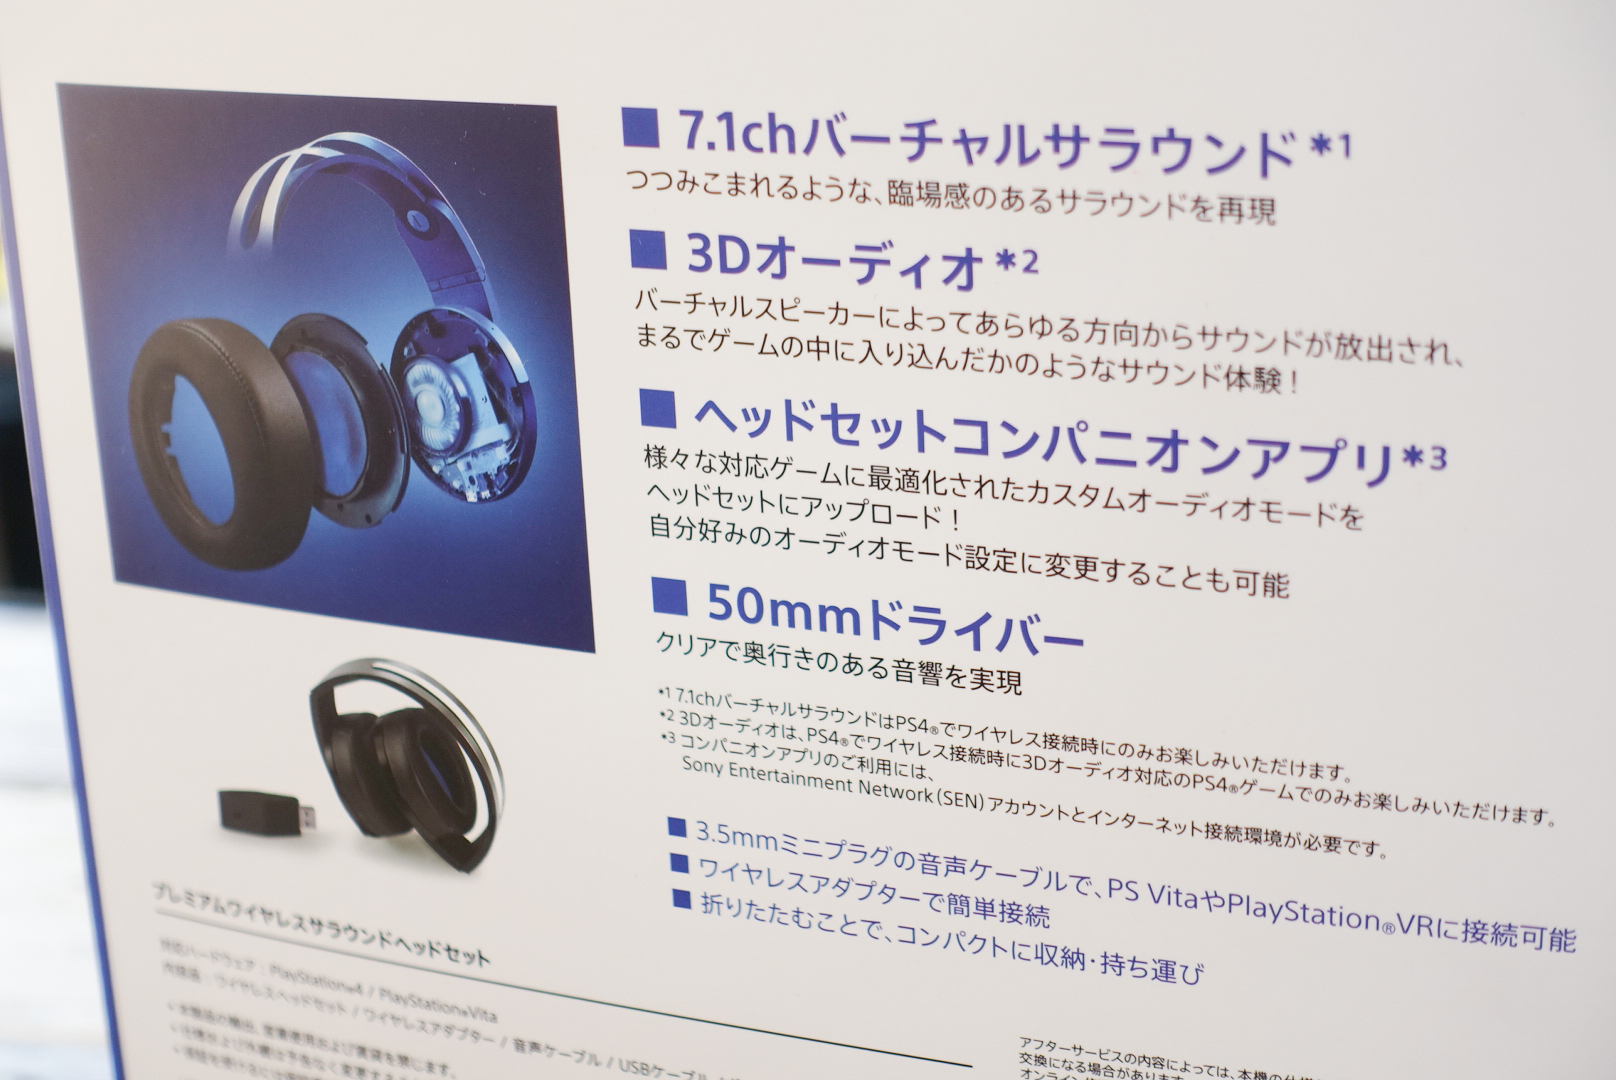 Ps4でマルチプレイが捗る Sony純正のワイヤレスヘッドセットが音質も使い勝手も良くて満足 超ゲームウォーカー